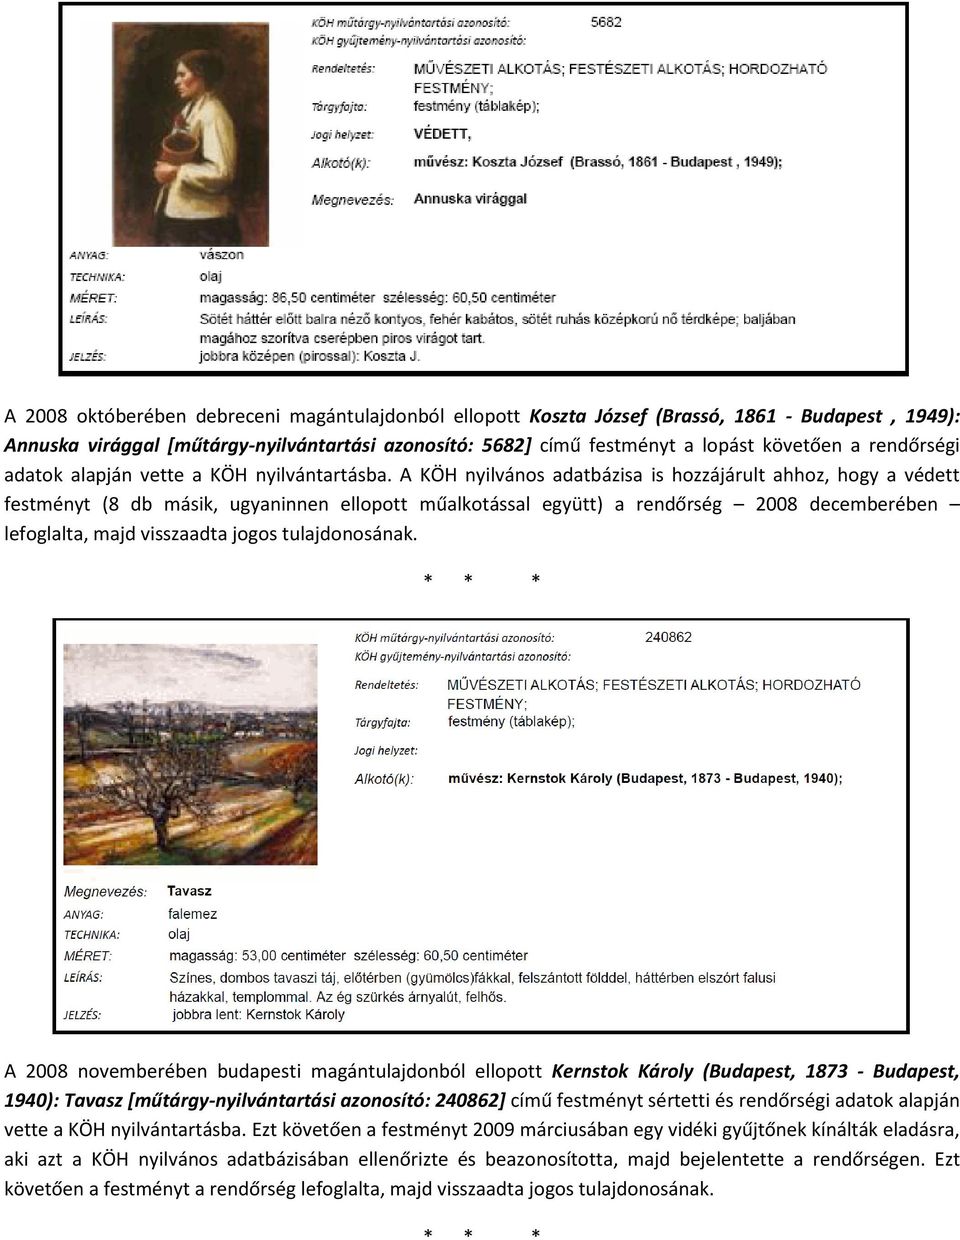 A KÖH nyilvános adatbázisa is hozzájárult ahhoz, hogy a védett festményt (8 db másik, ugyaninnen ellopott műalkotással együtt) a rendőrség 2008 decemberében lefoglalta, majd visszaadta jogos